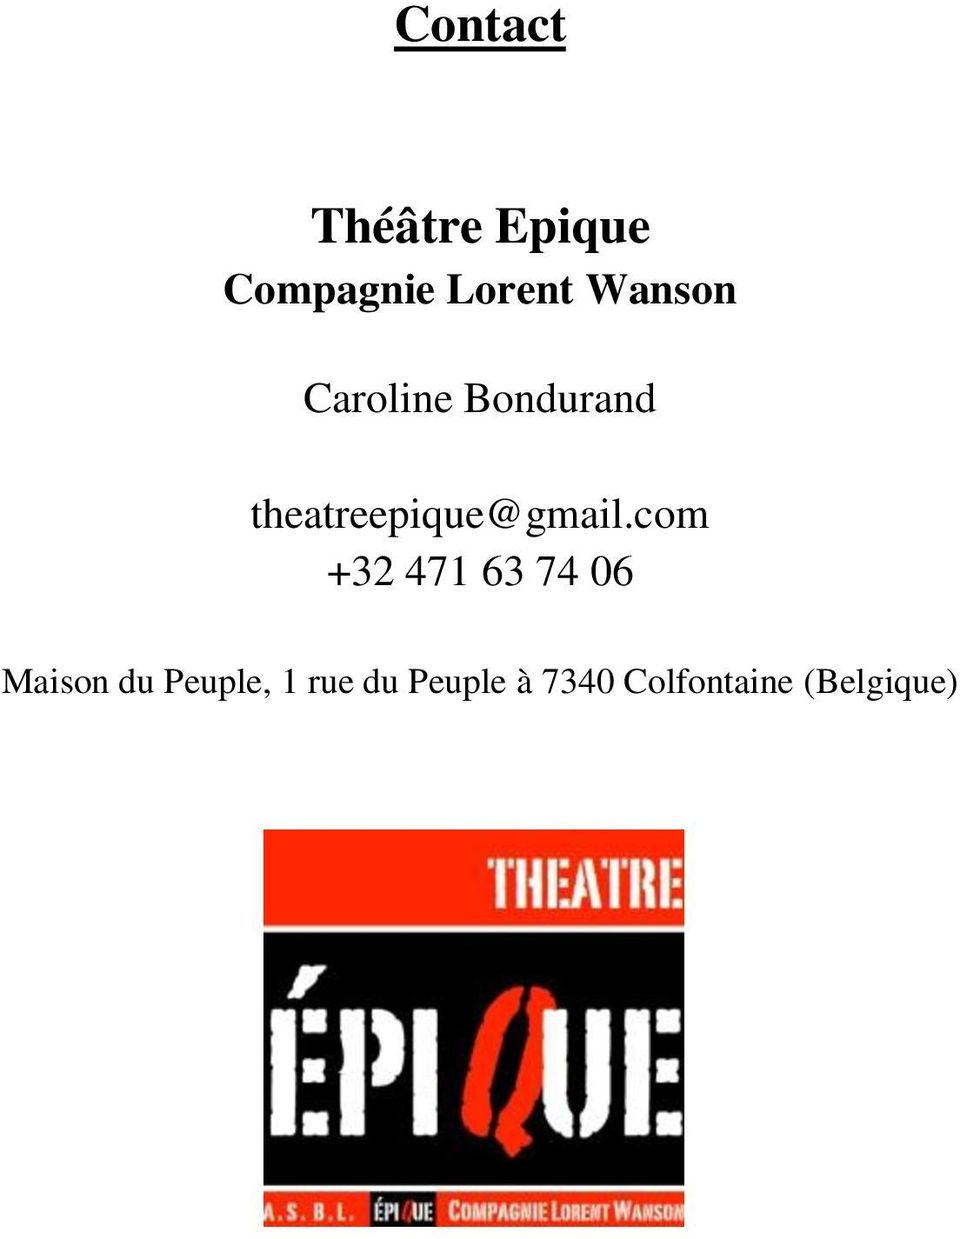 theatreepique@gmail.